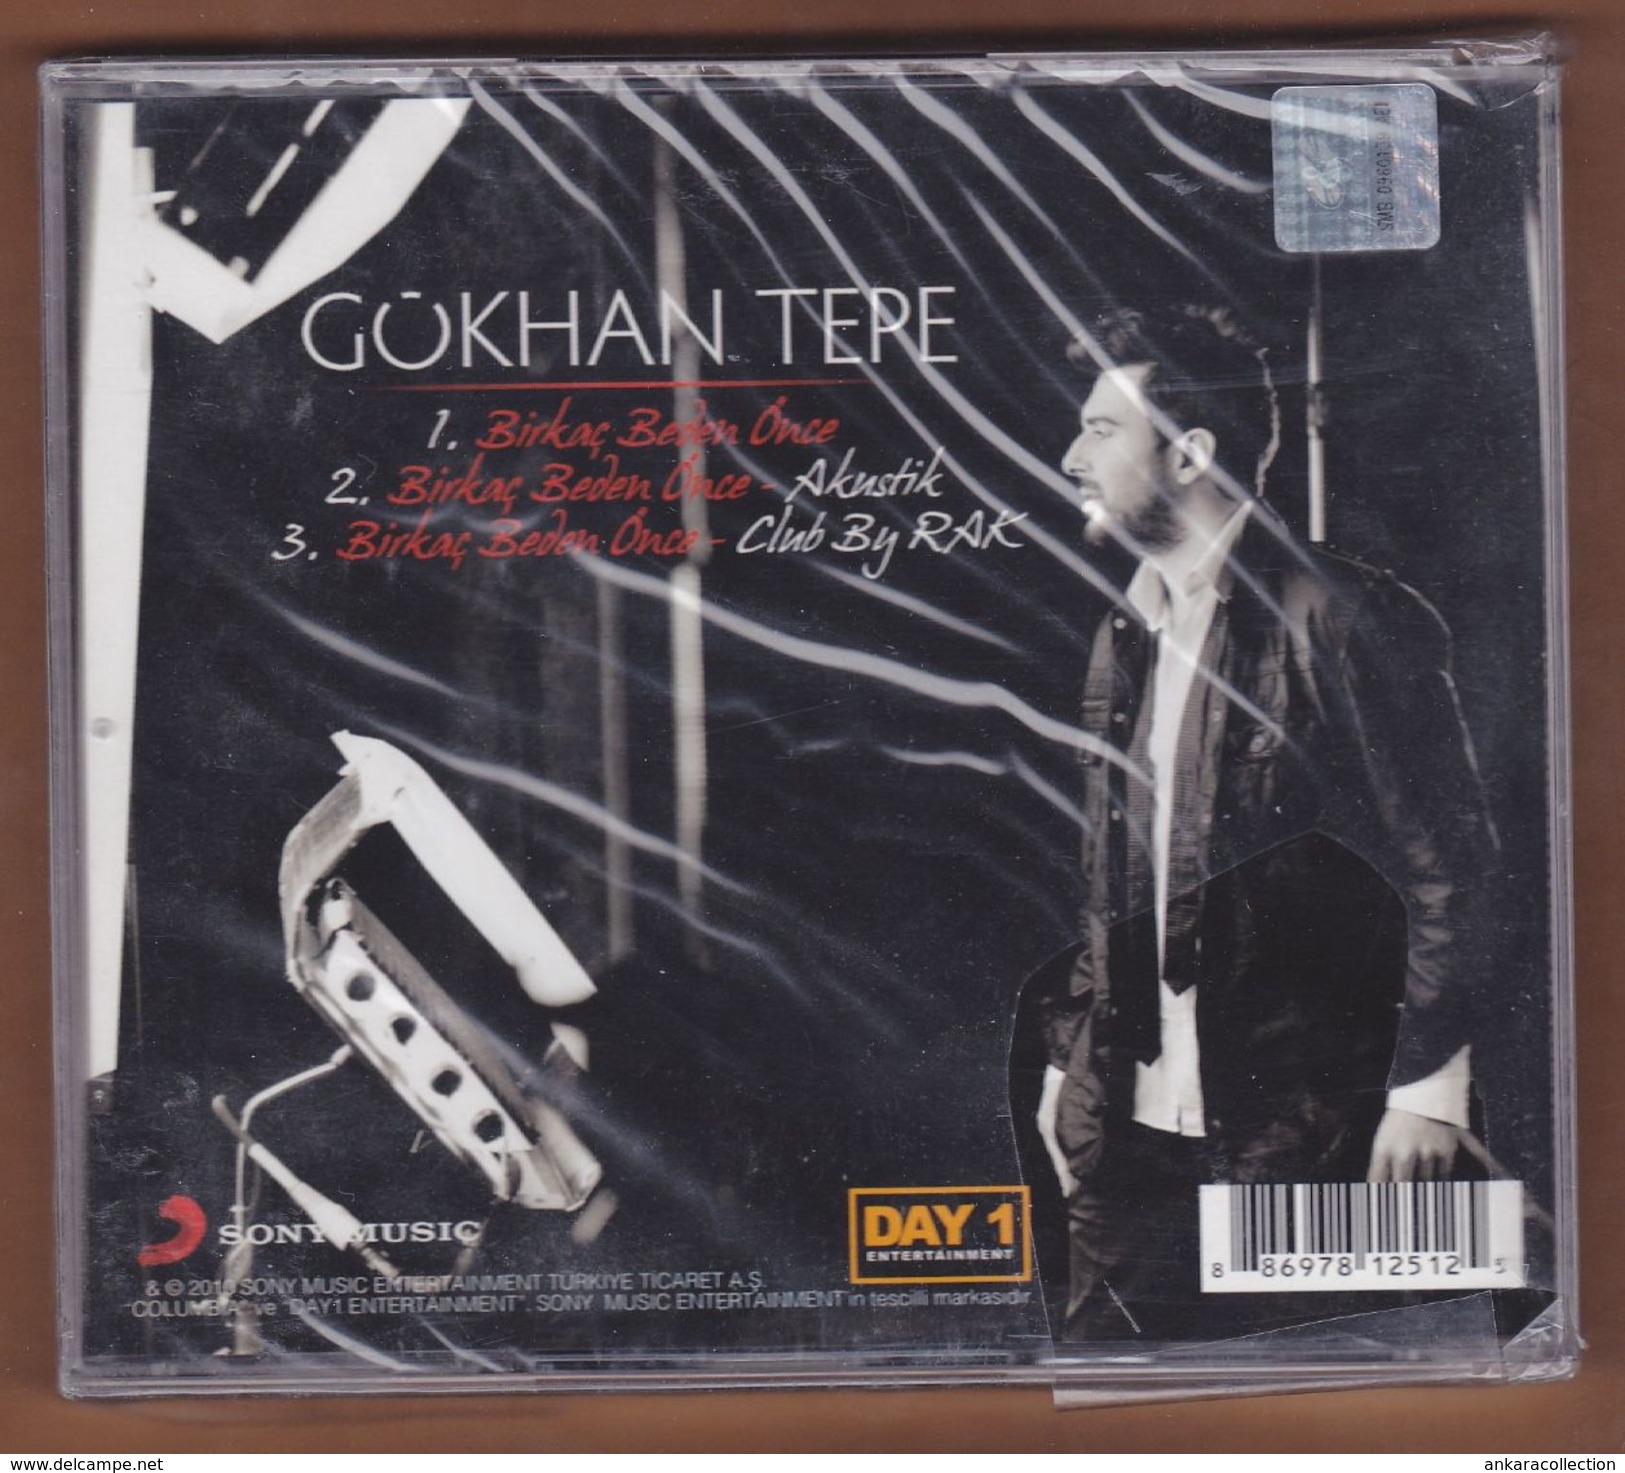 AC -  Gökhan Tepe Birkaç Beden önce BRAND NEW TURKISH MUSIC CD - Wereldmuziek